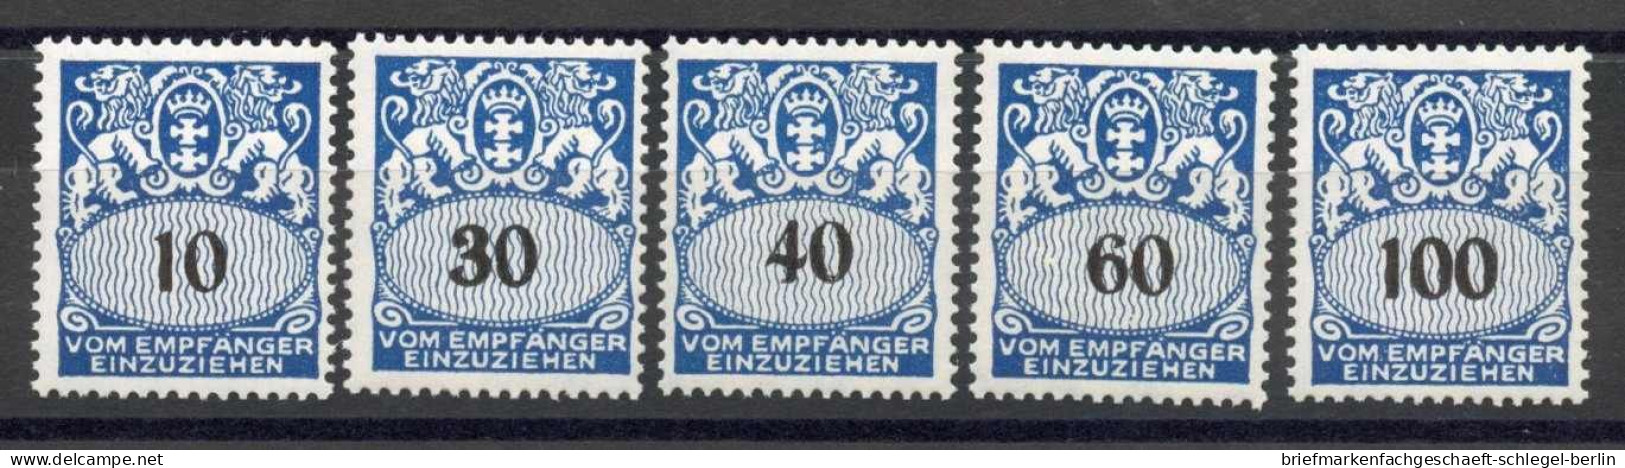 Danzig, 1938, 43-47, Postfrisch - Postage Due